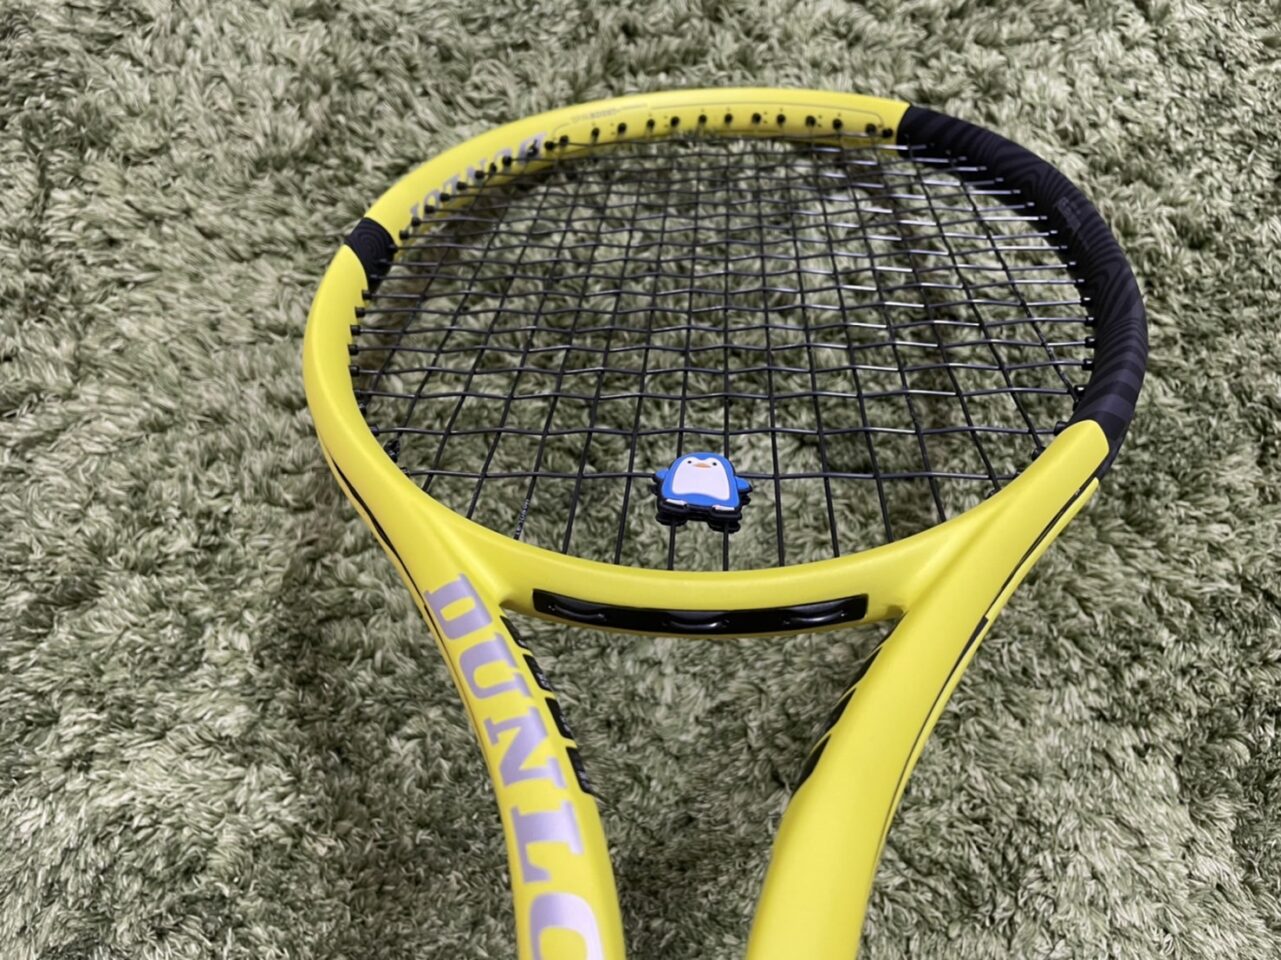 待望☆】テニスラケット ダンロップSX300 2022 グリップ3 ラケット 